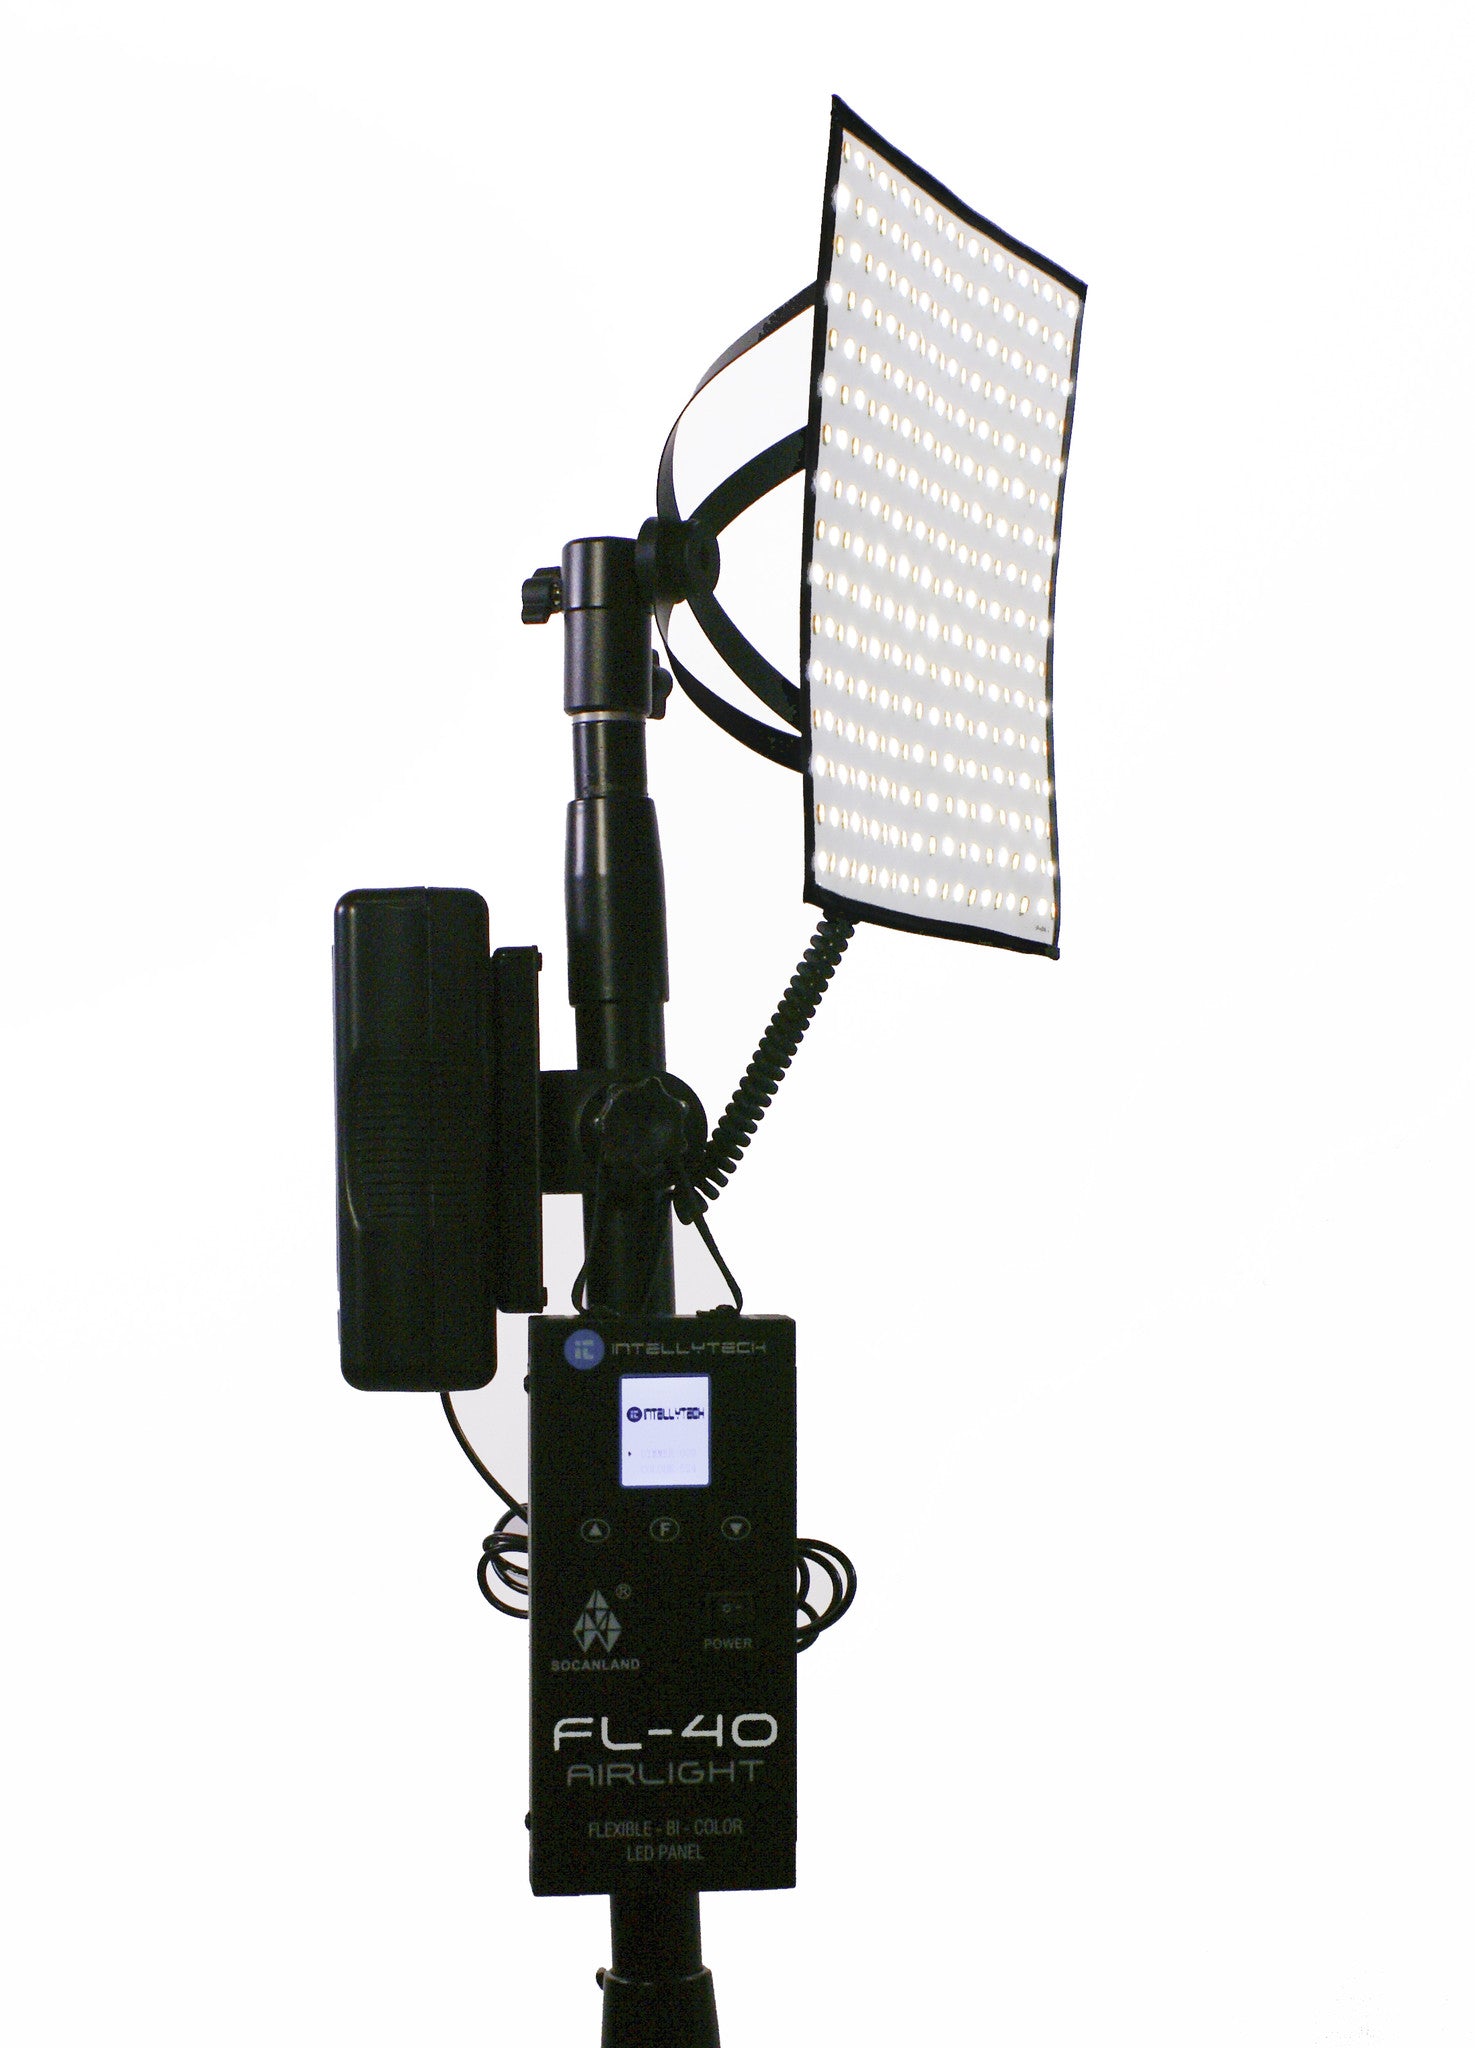 FL-40 Airlight Kit - Flexible 10"x10" LED Bi-Color Light Panel. Flexlite (Intellytech, Socanland) 